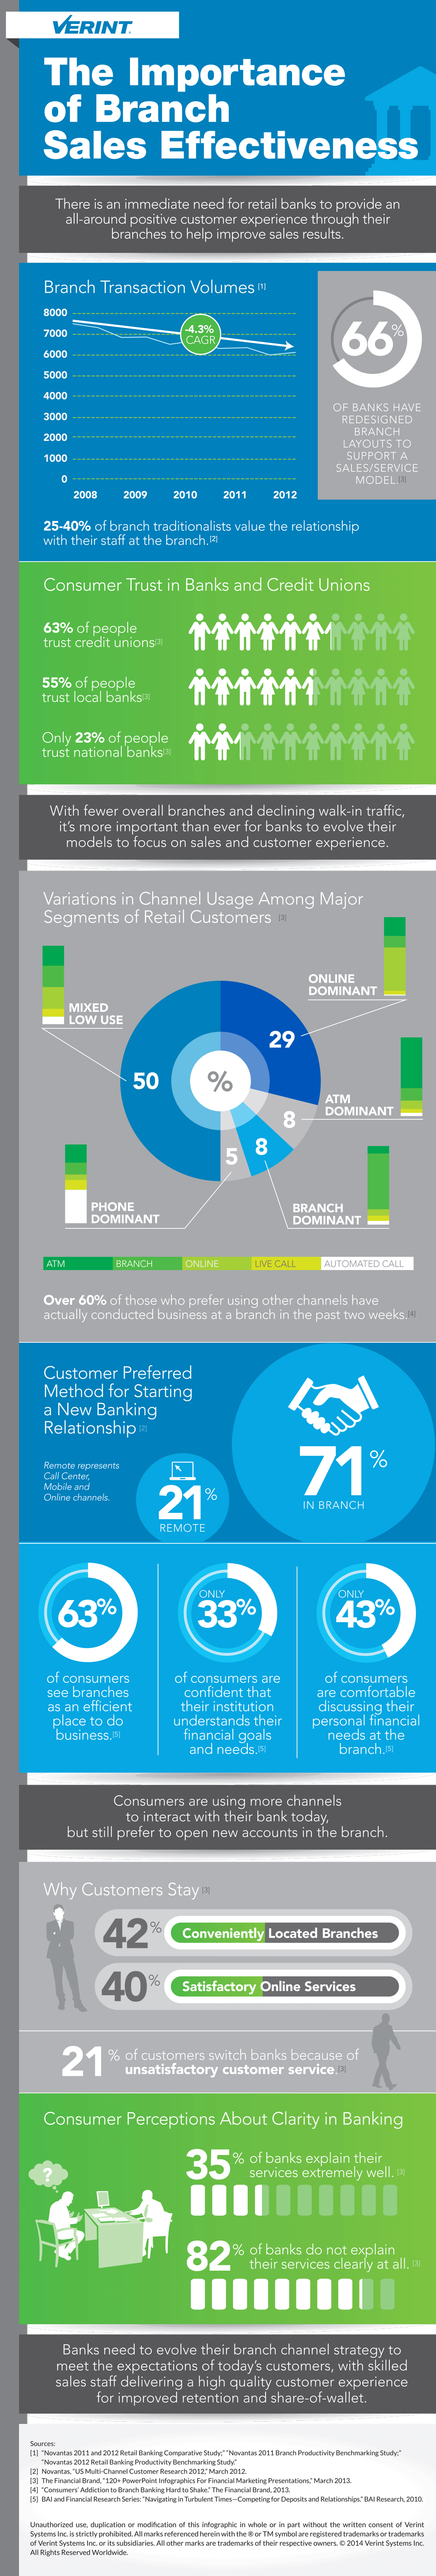 Infografik zur Bedeutung von Effizienz im Vertrieb von Bankfilialen